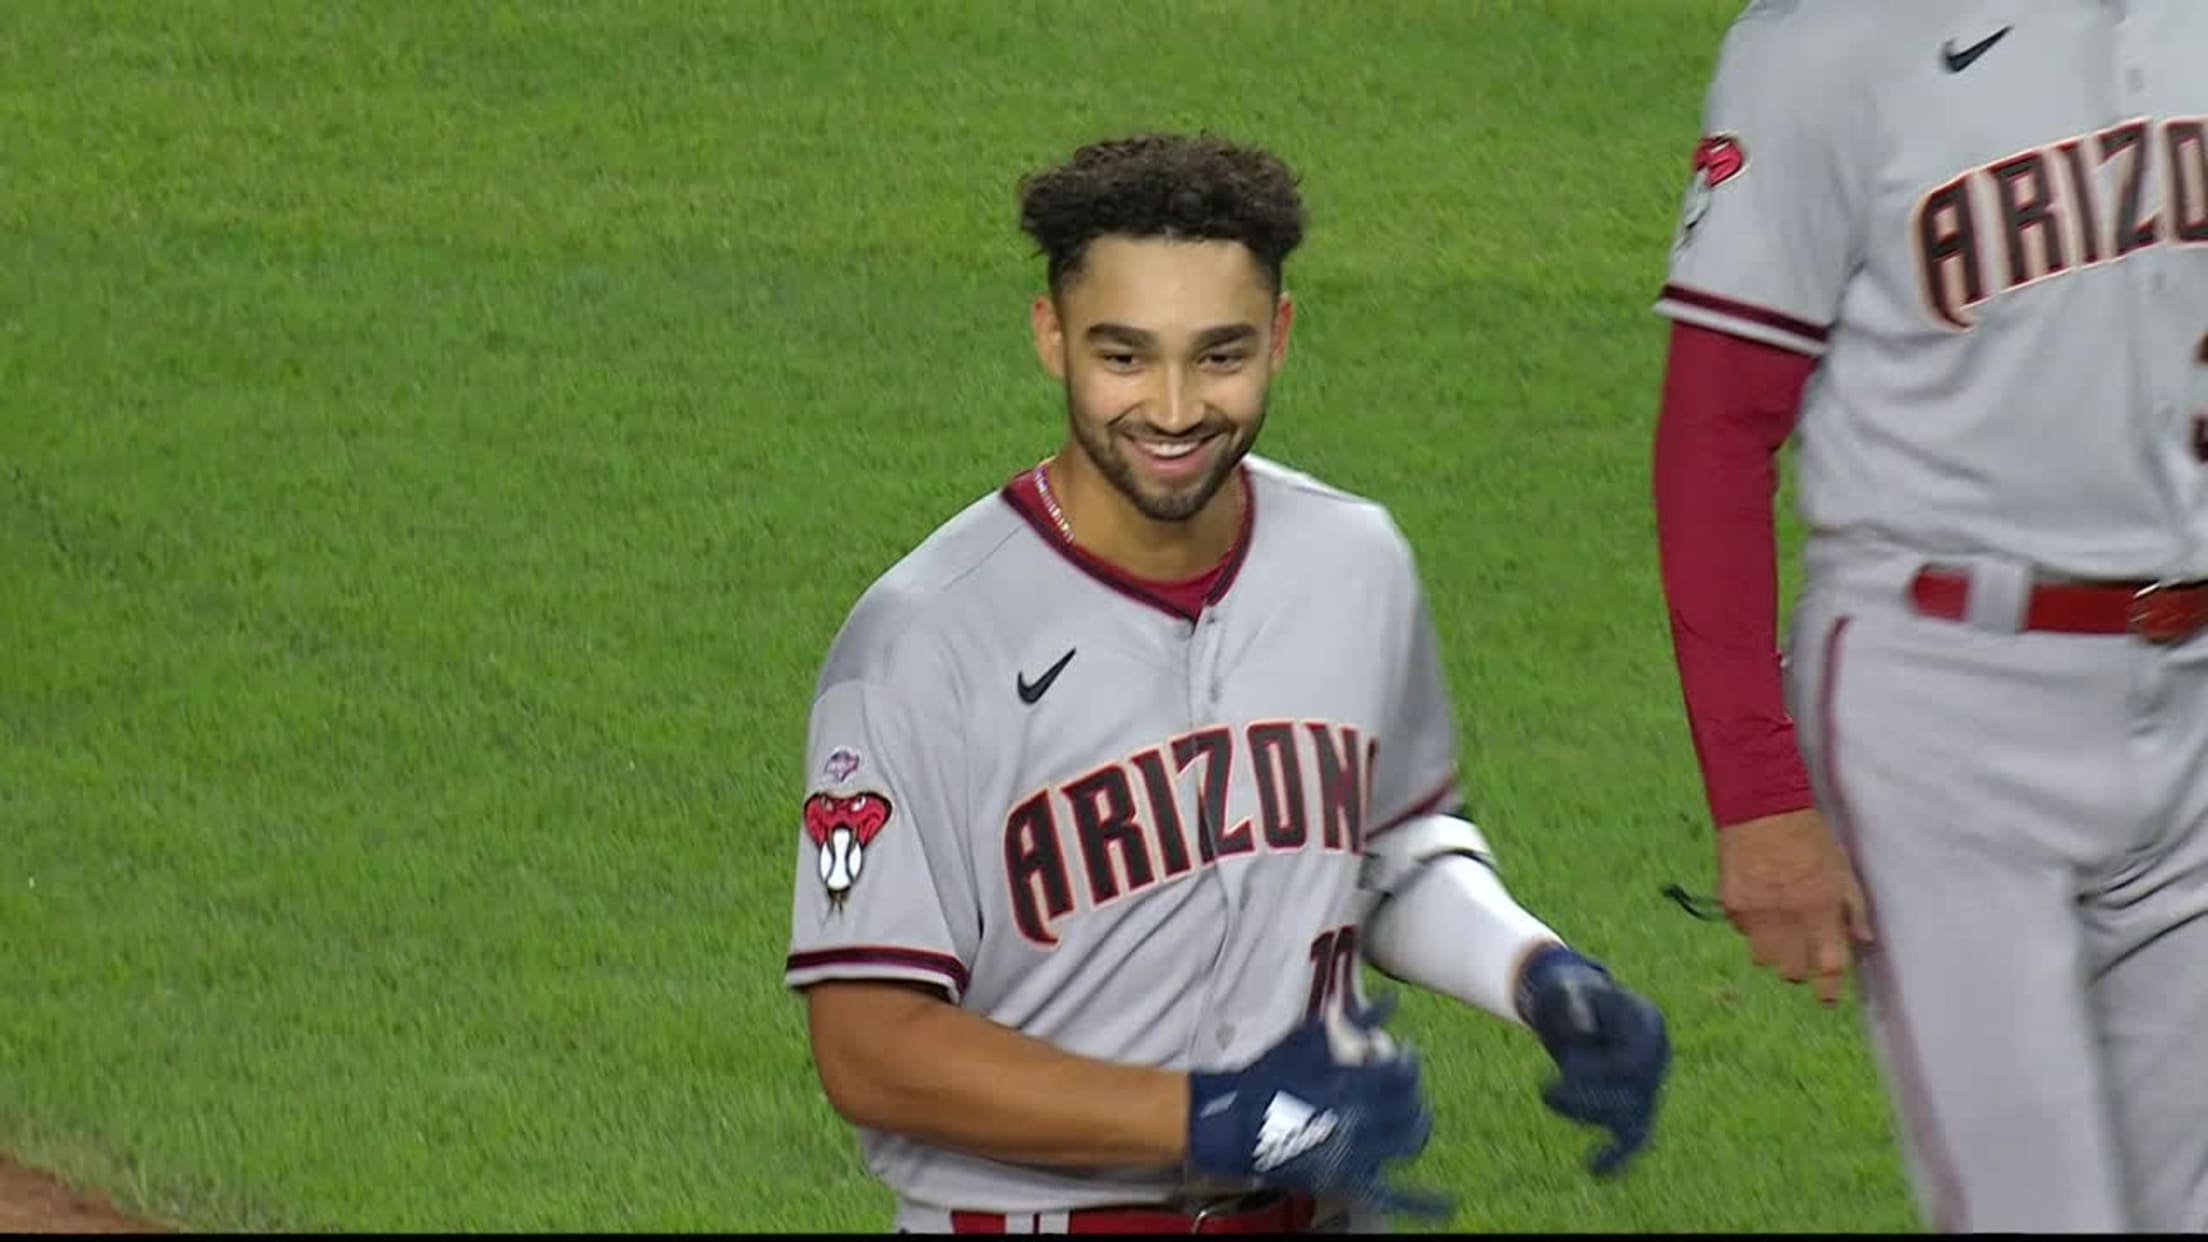 Jordan Lawlar's MLB debut